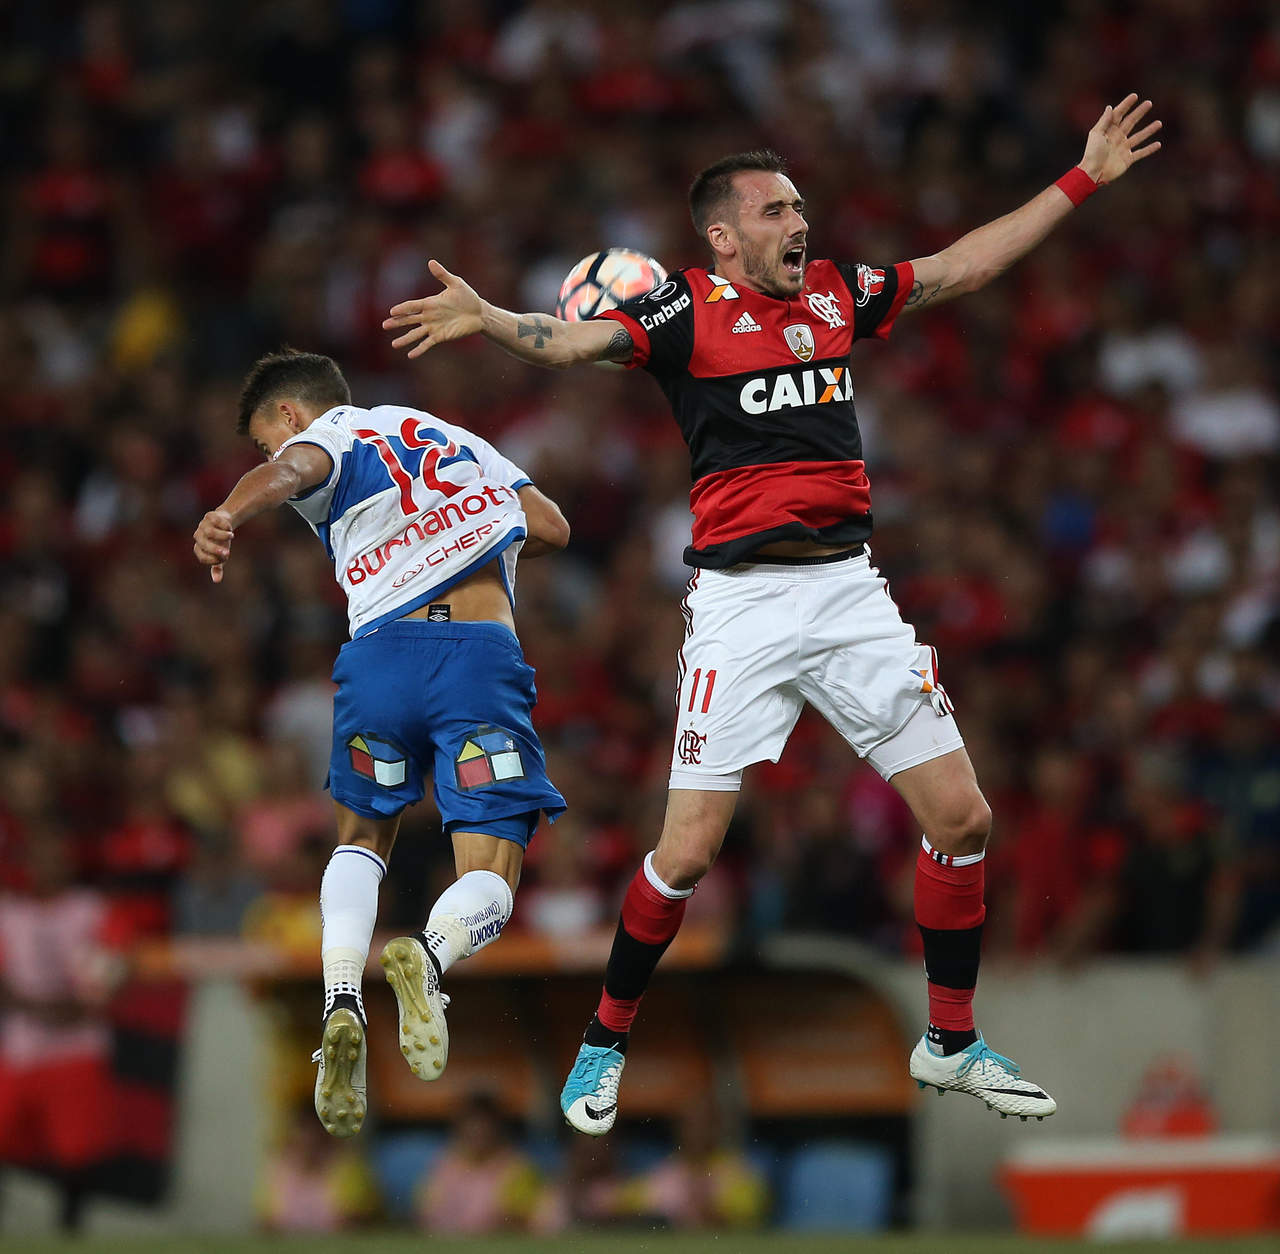 Mancuello, argentino de 28 años, buscaría dejar tierras brasileñas para recalar en México ante la falta de minutos en su actual equipo, Flamengo. (ARCHIVO)